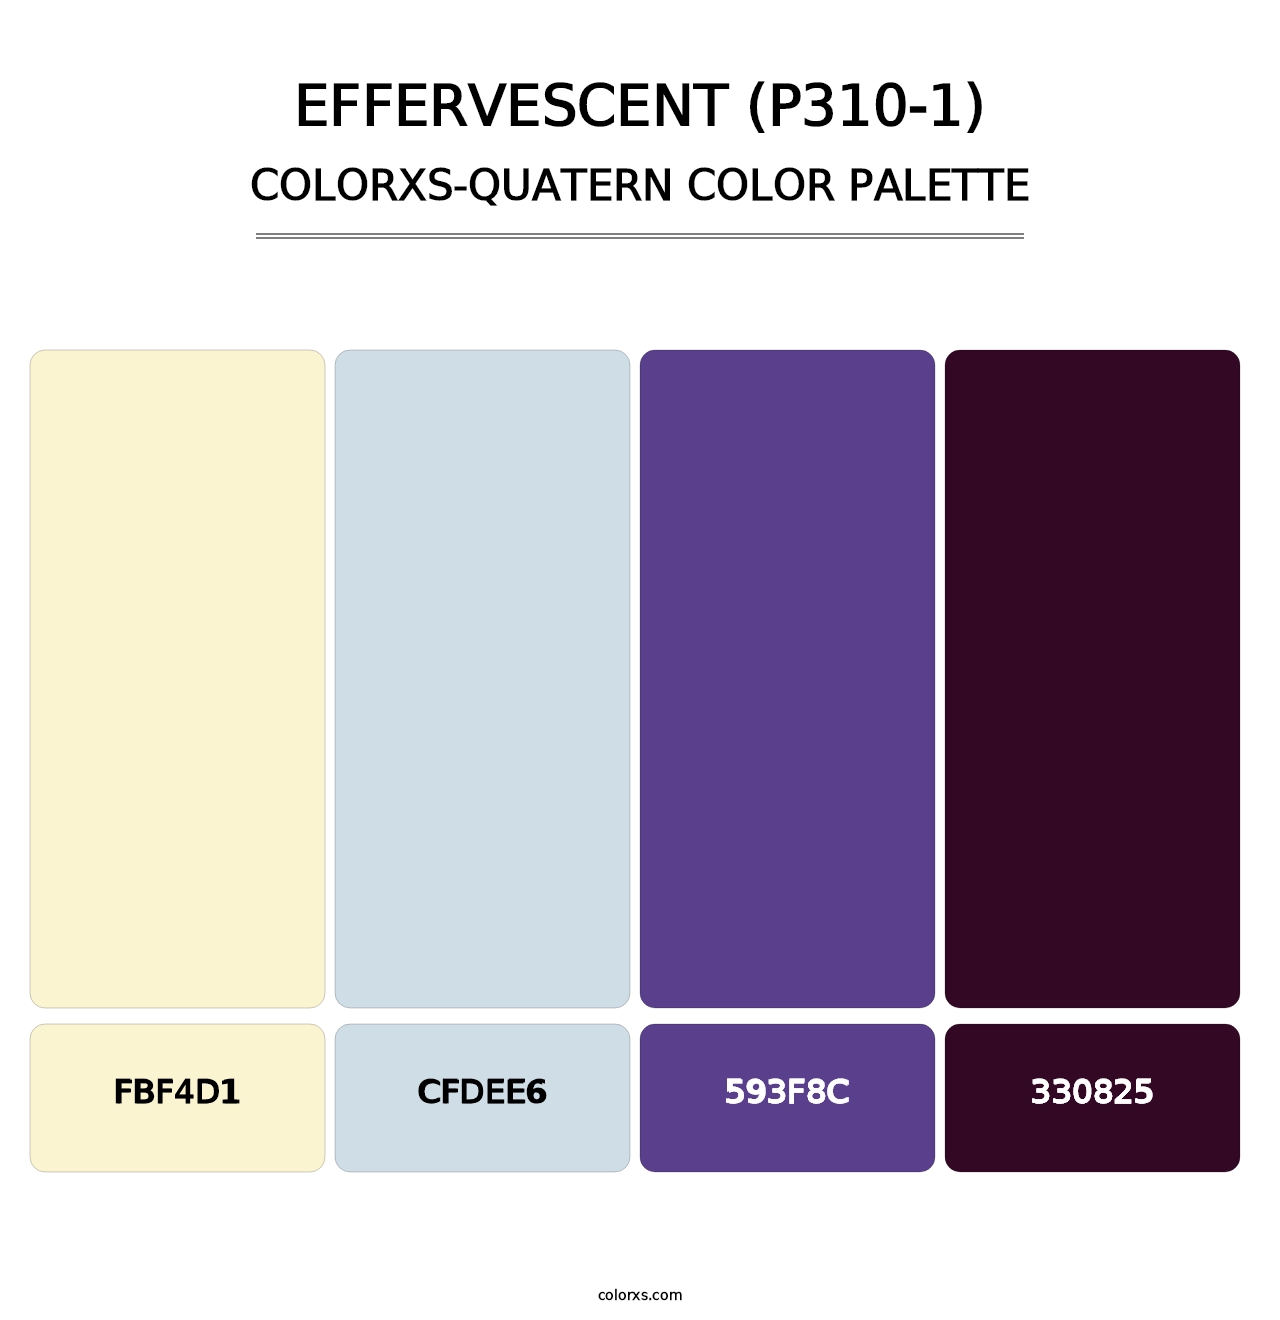 Effervescent (P310-1) - Colorxs Quatern Palette